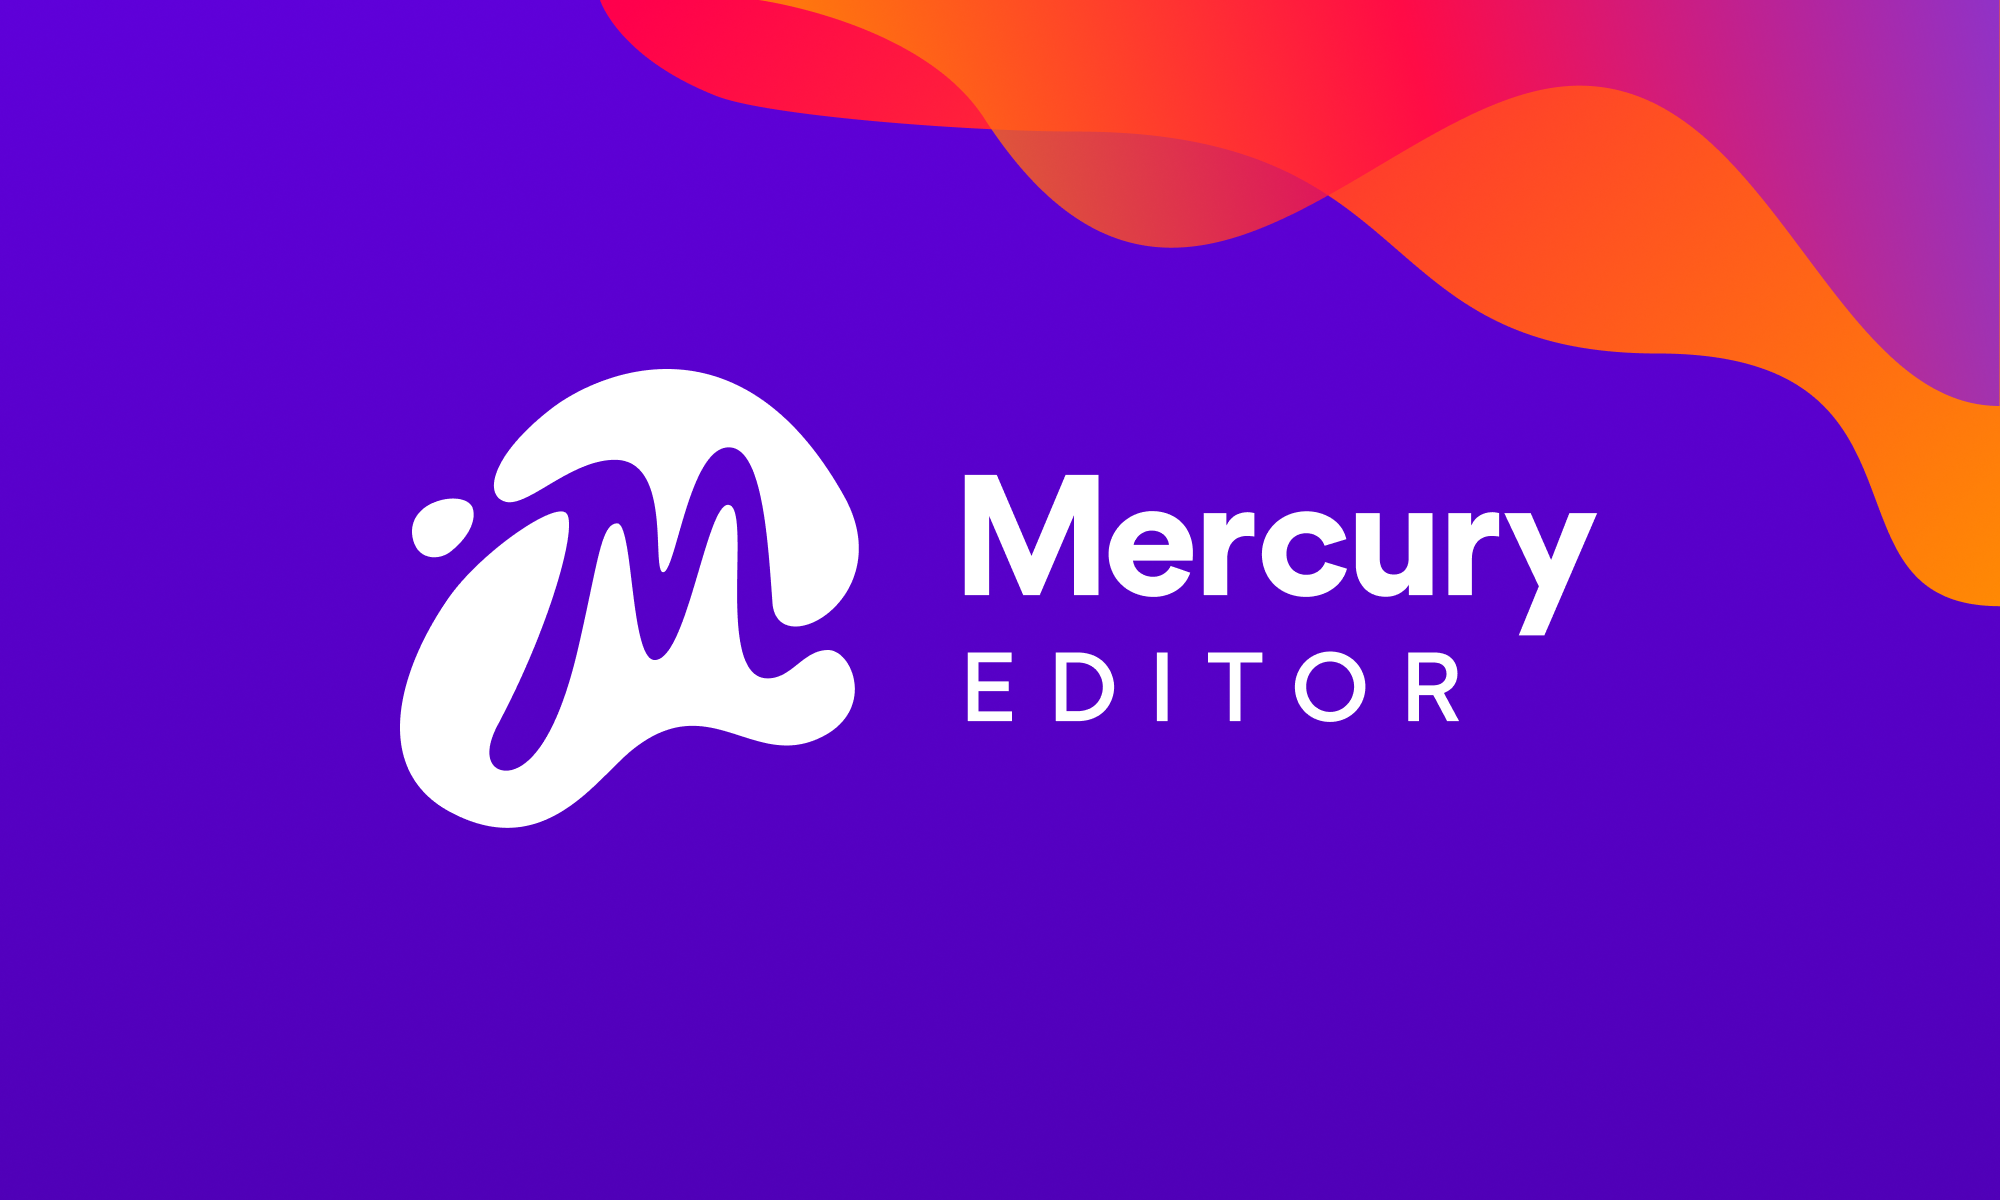 Mercury Editor white logo on purple background